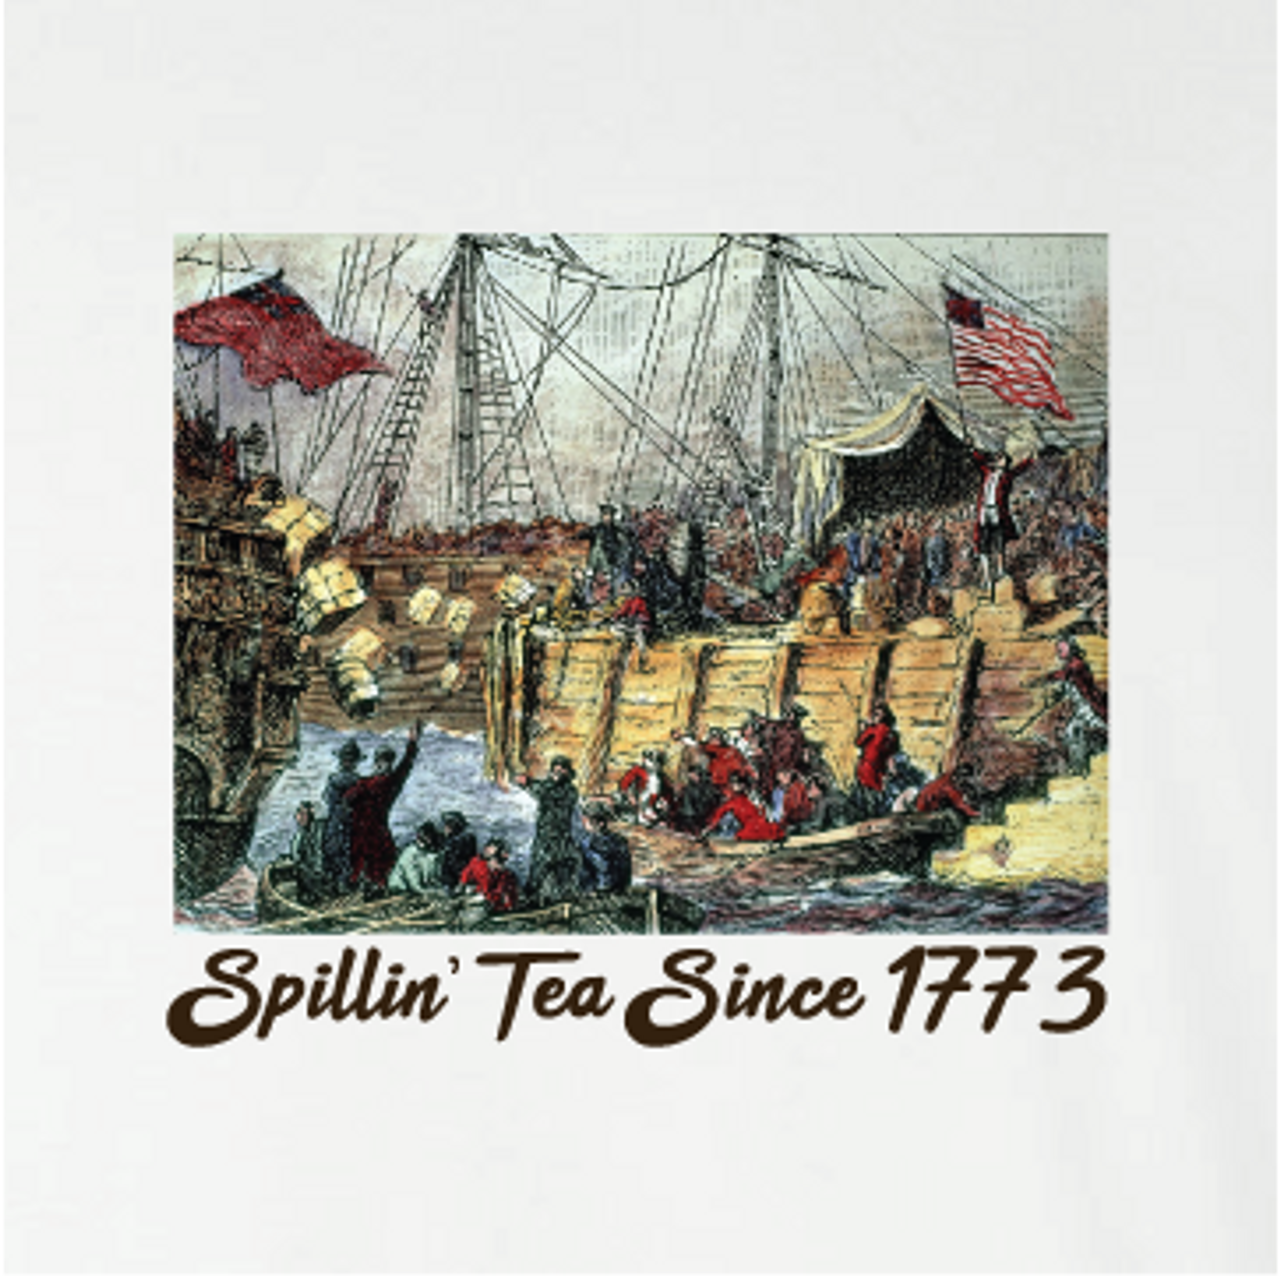 "Spillin' Tea Since 1773"